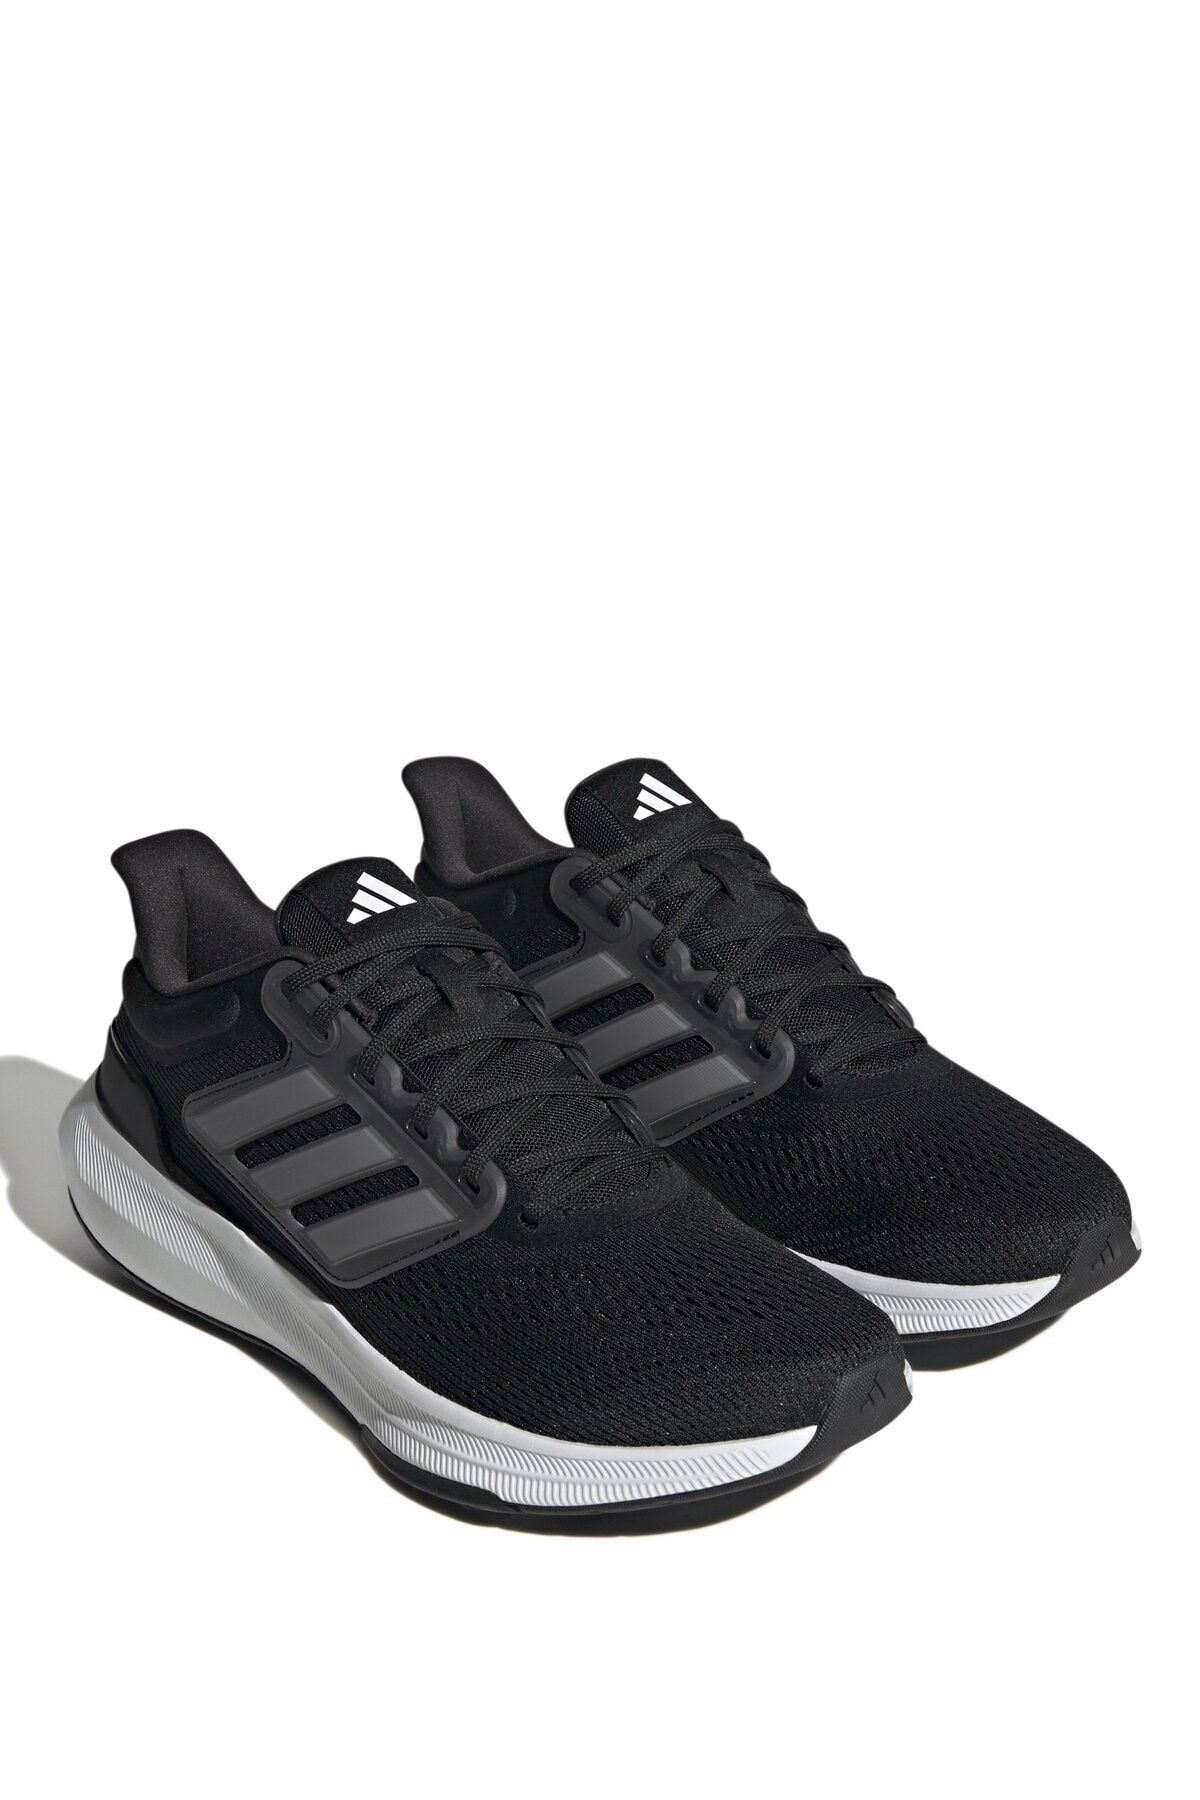 adidas Siyah - Beyaz Erkek Koşu Ayakkabısı Hp5796 Ultrabounce